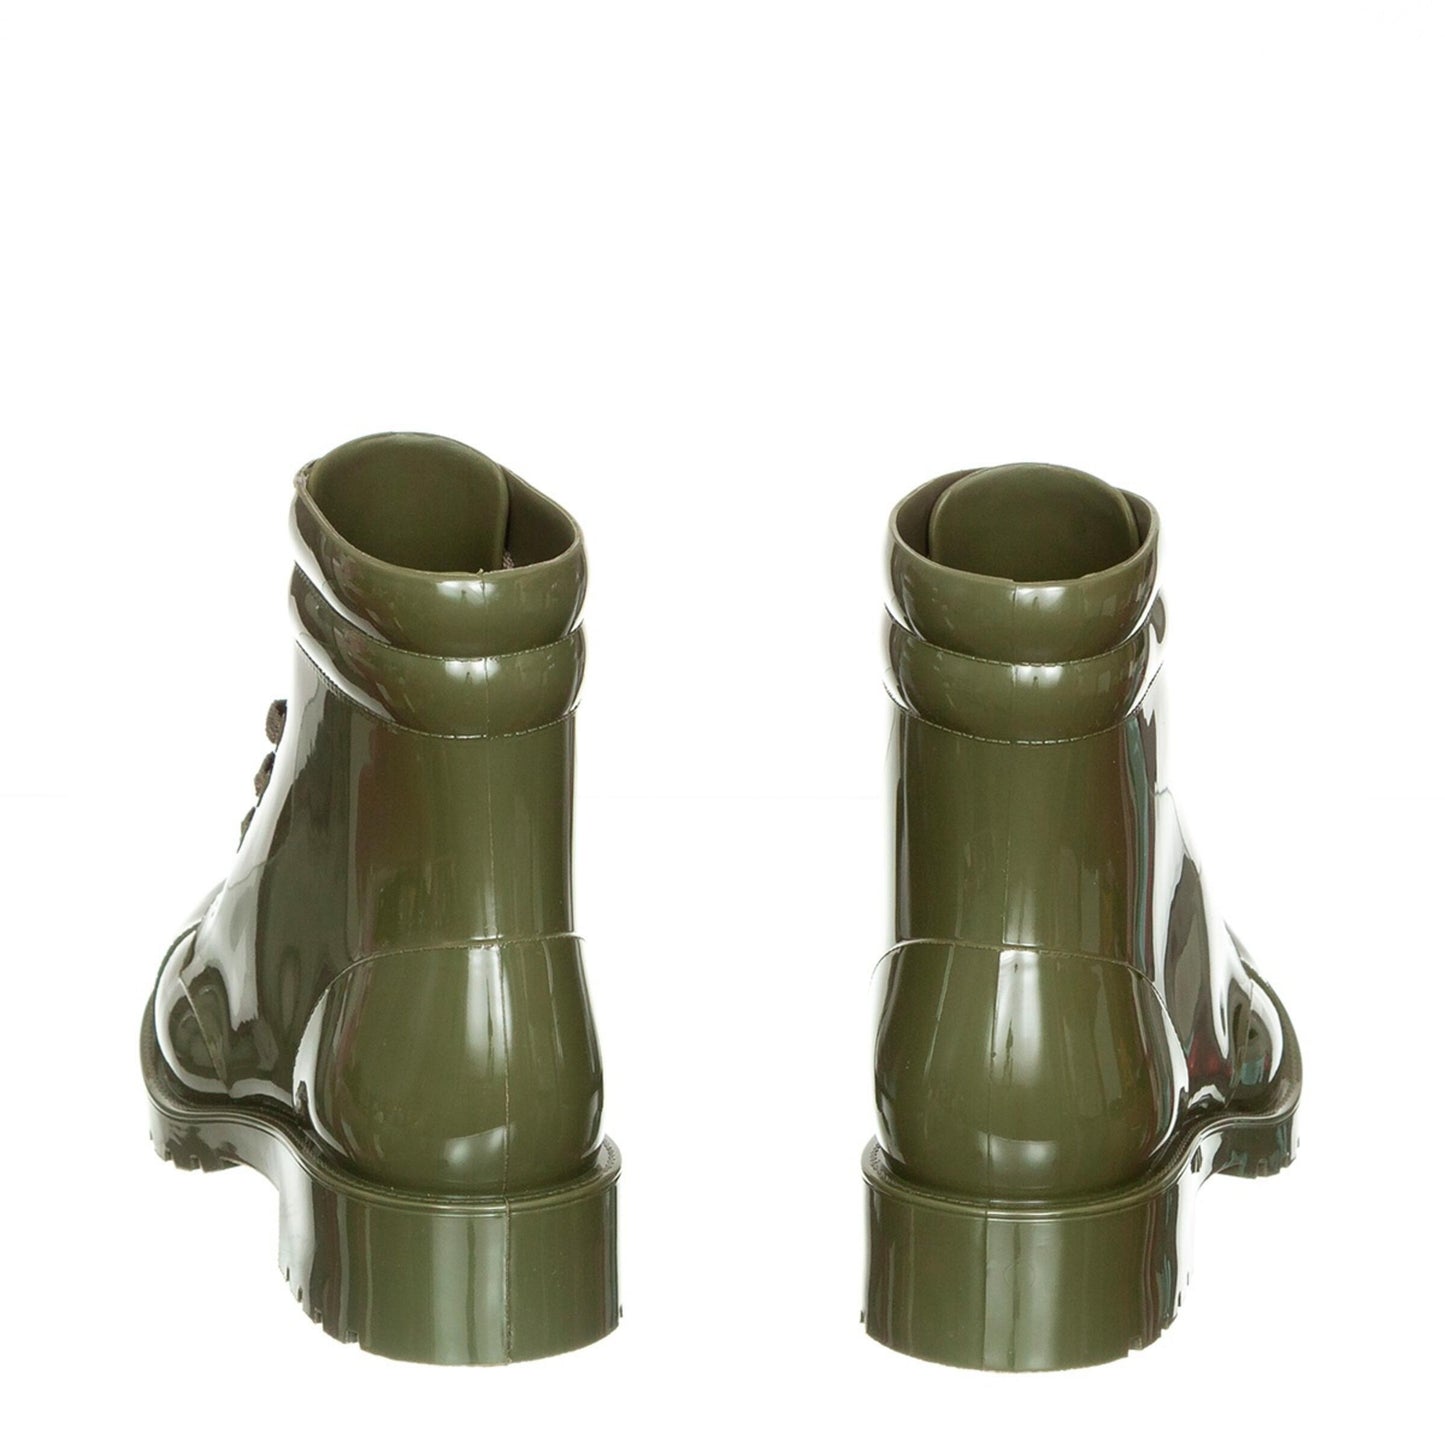 Combat (Green) Boots